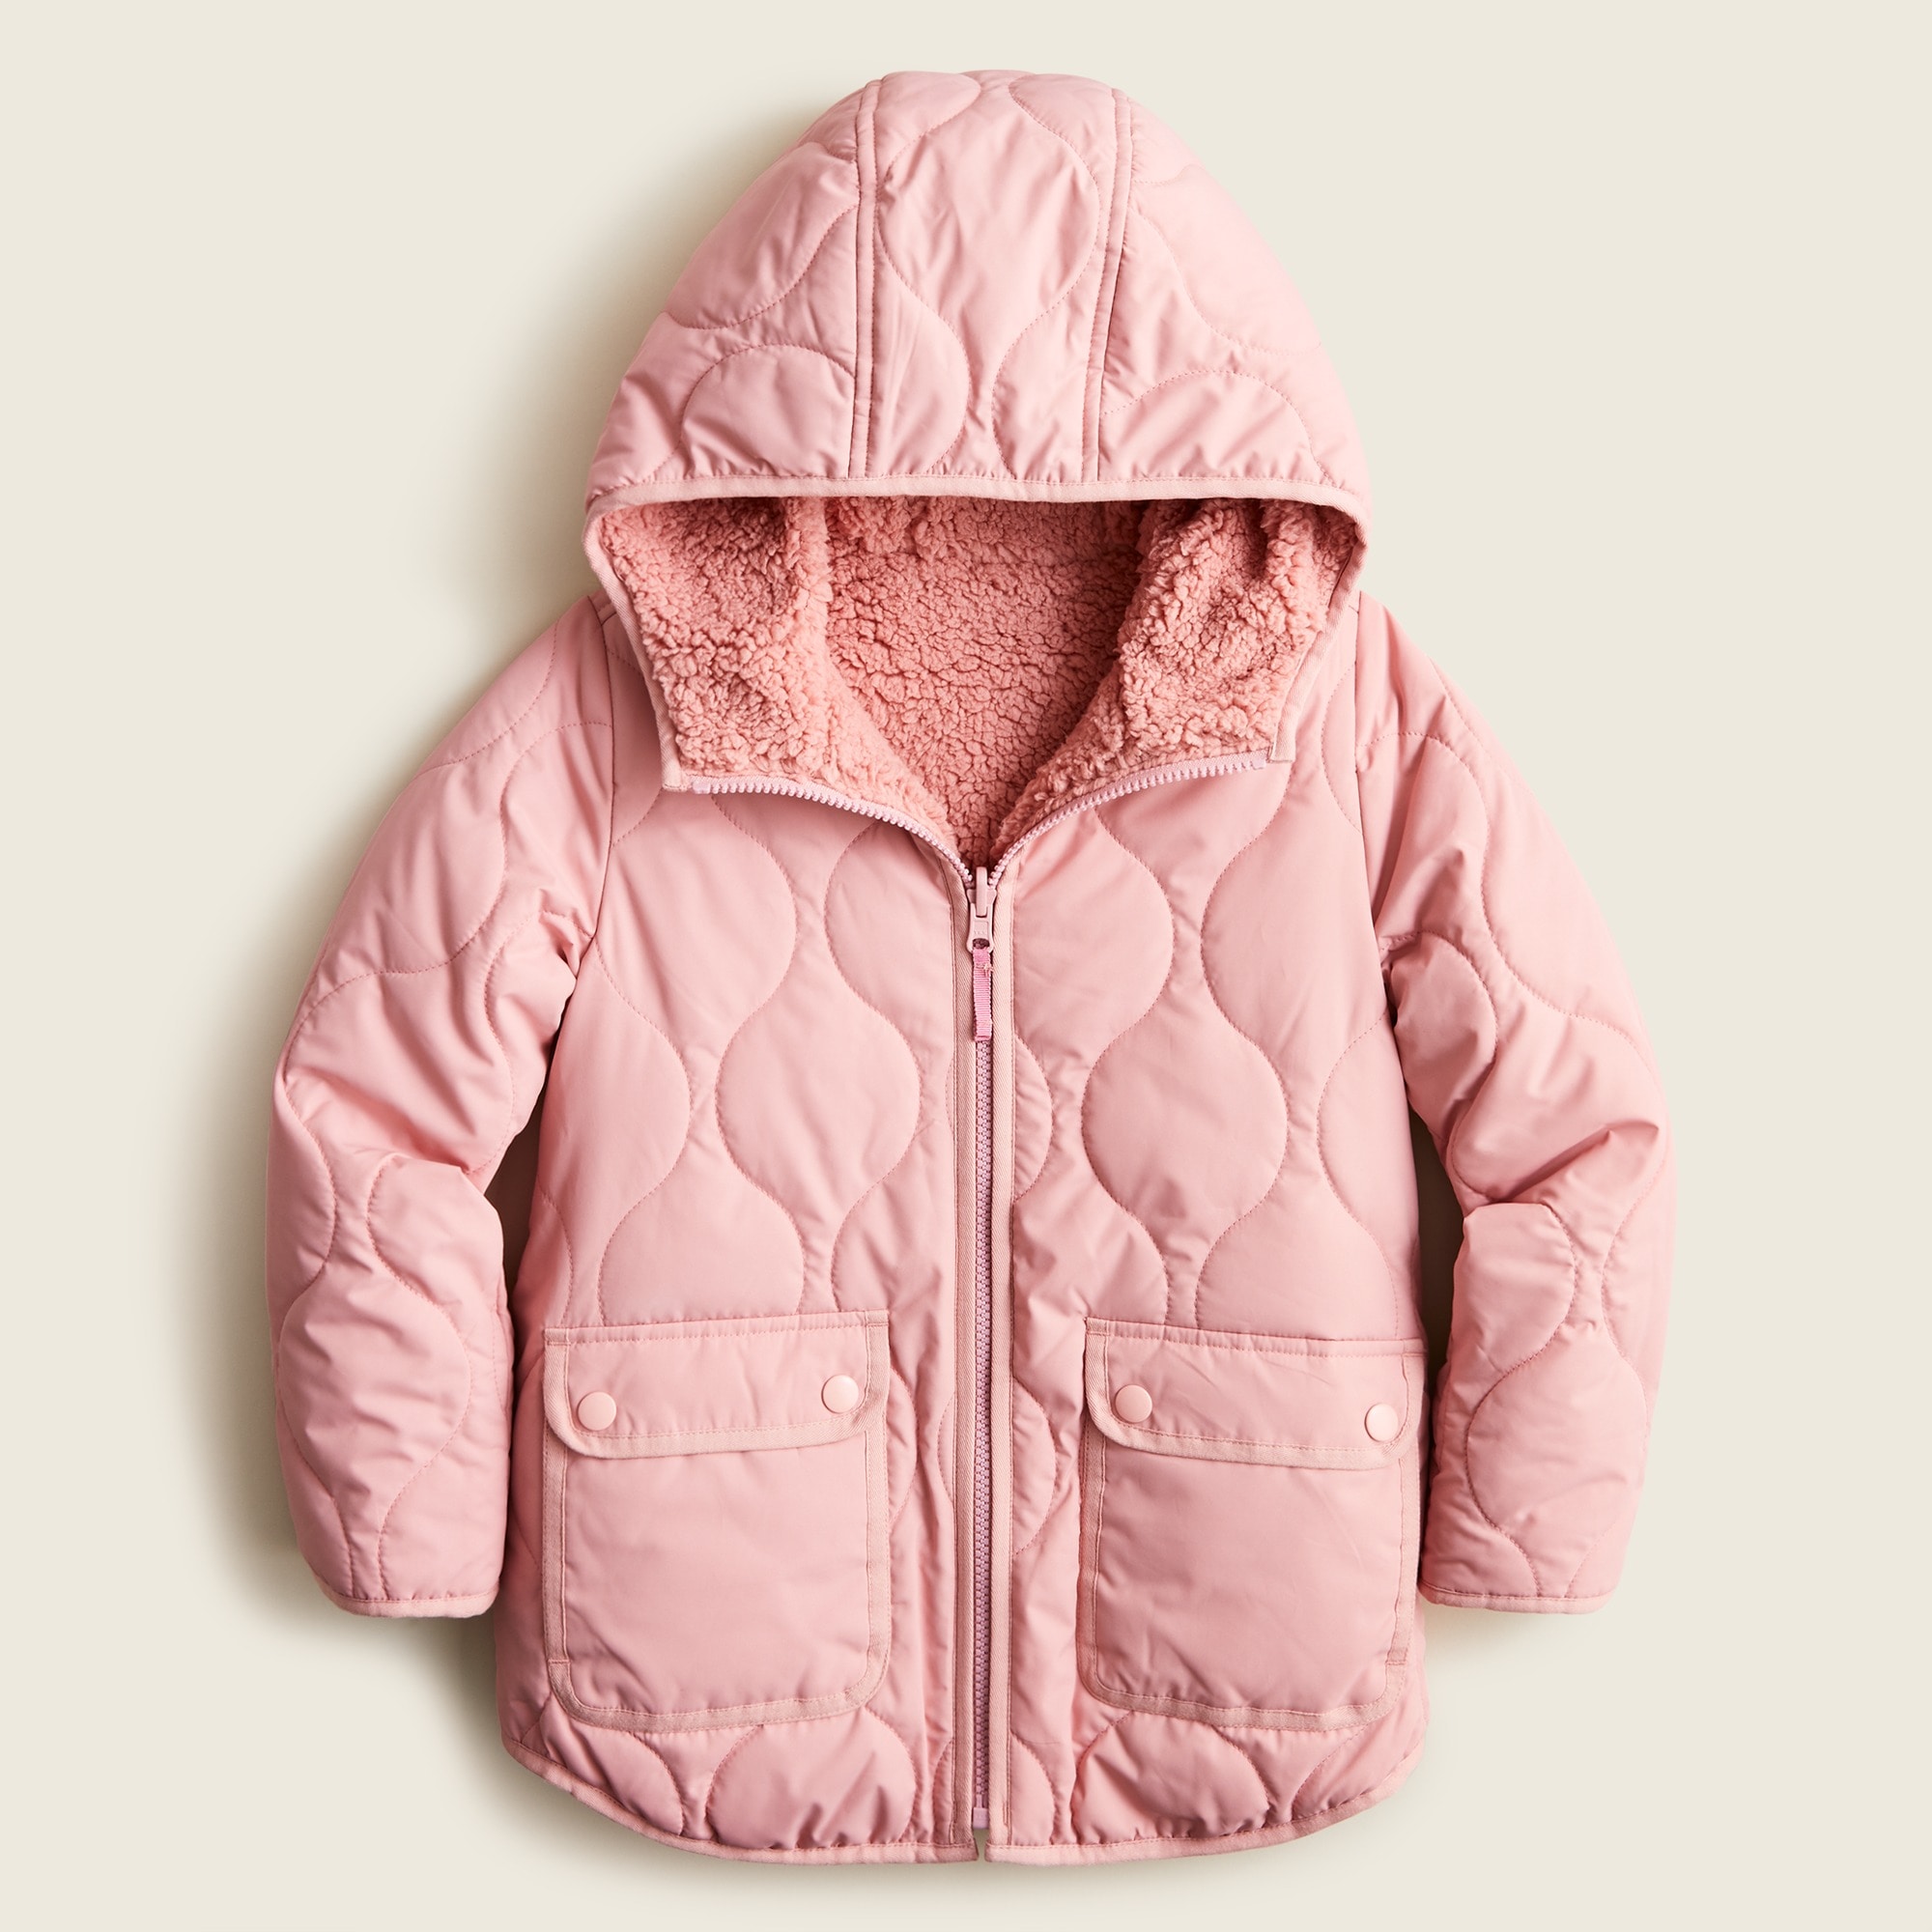 제이크루 걸즈 푸퍼 자켓 J.Crew Girls reversible quilted jacket with eco-friendly PrimaLoft,SWEET ROSE